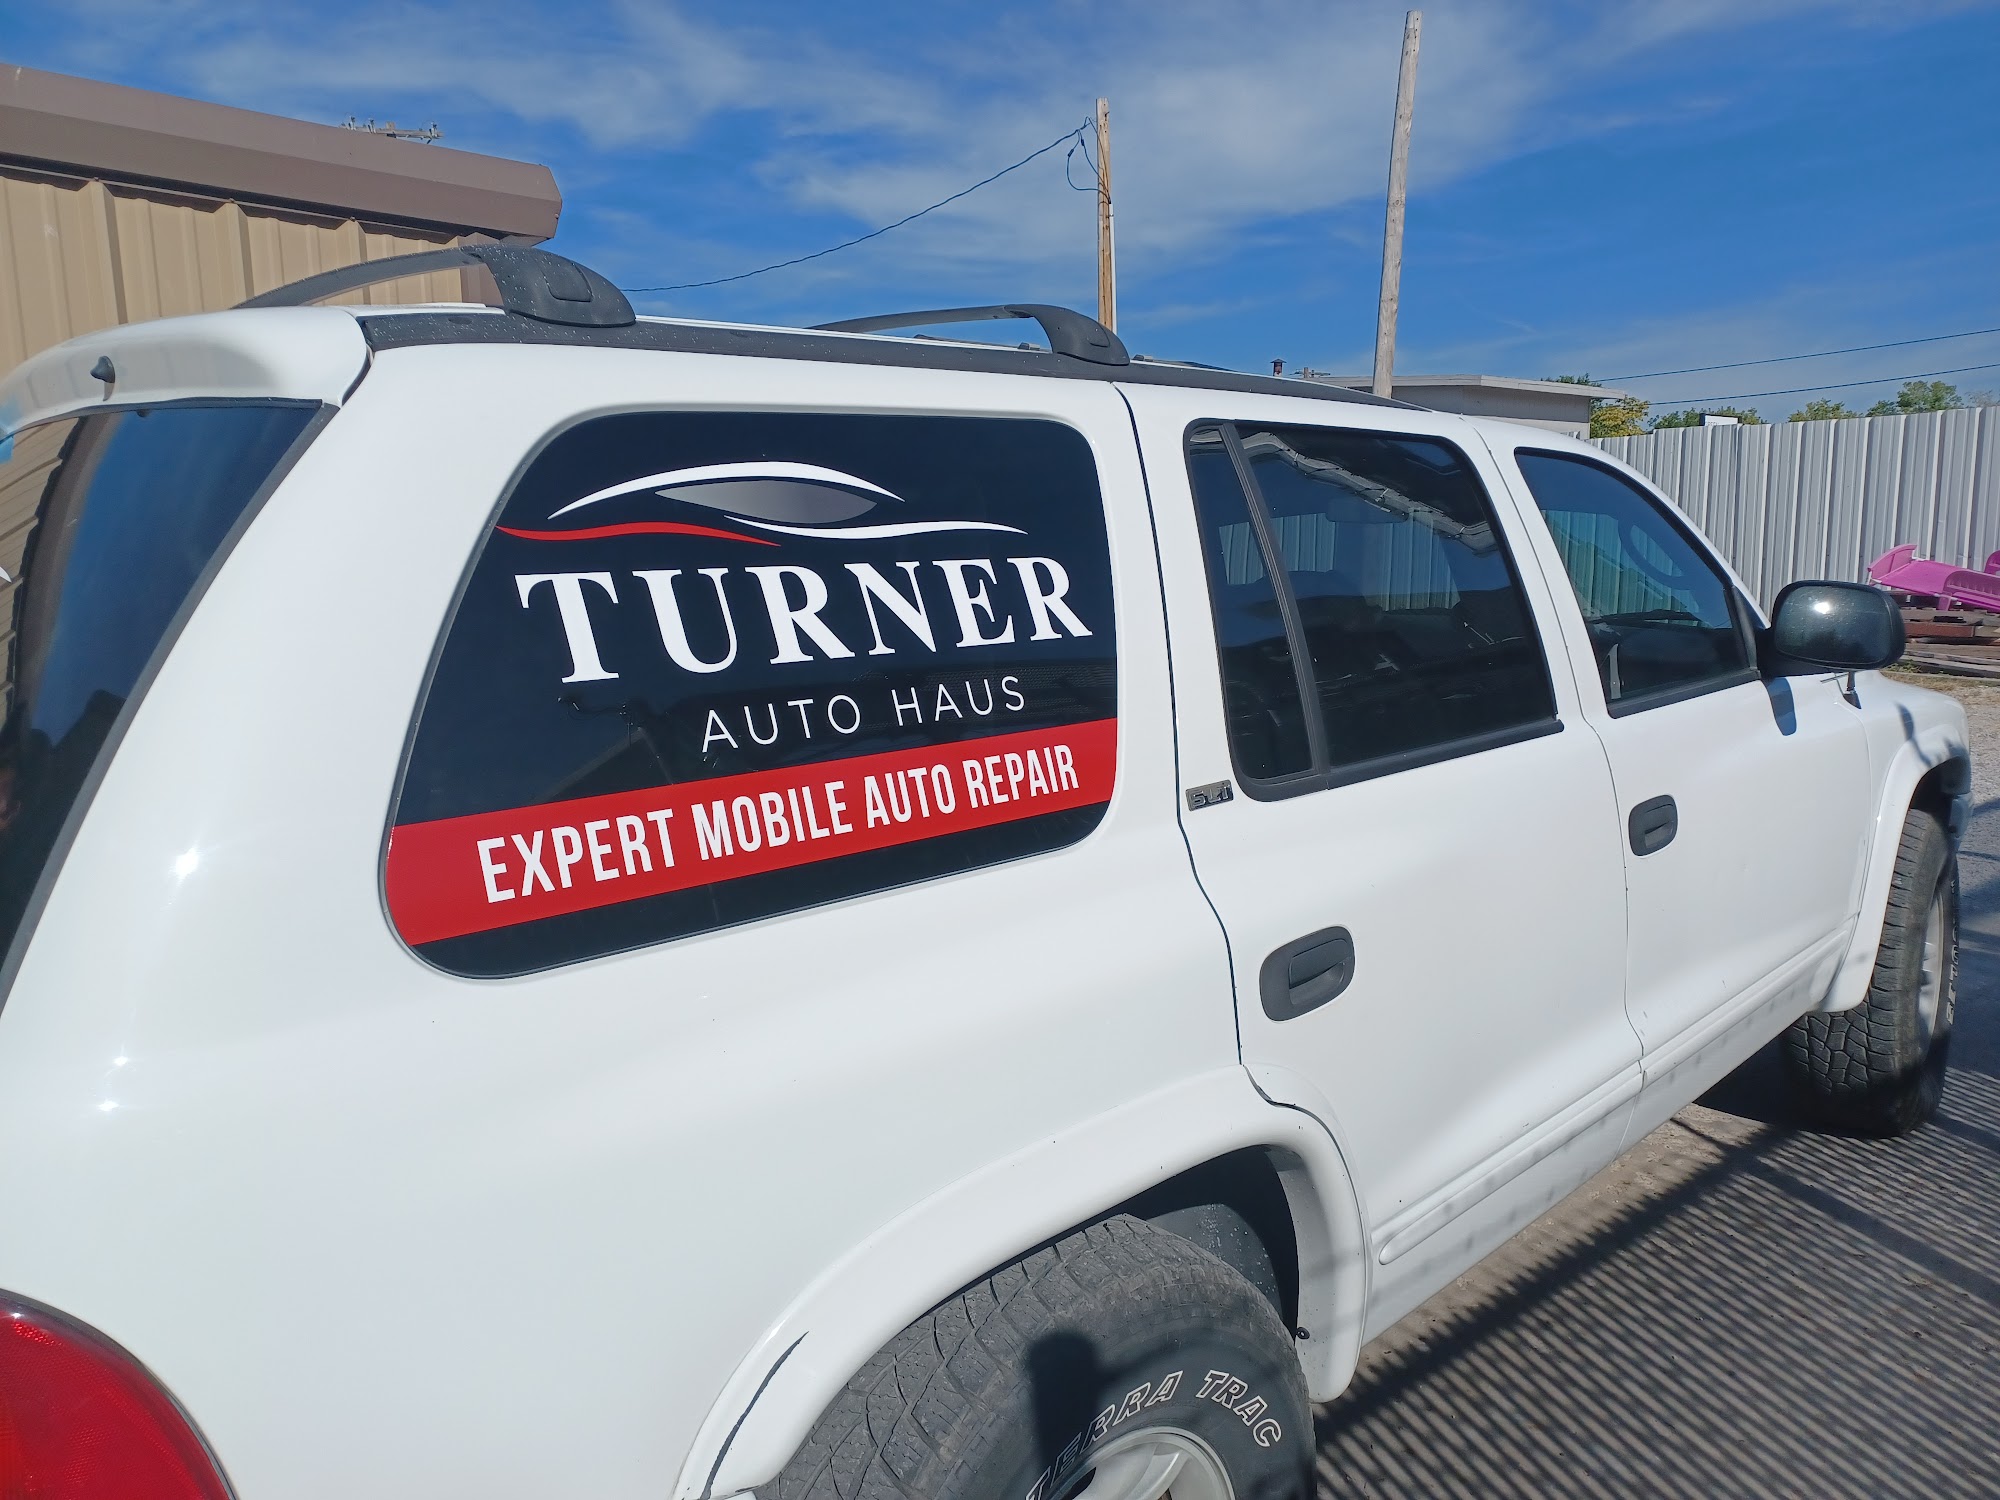 Turner Auto Haus Auto Repair